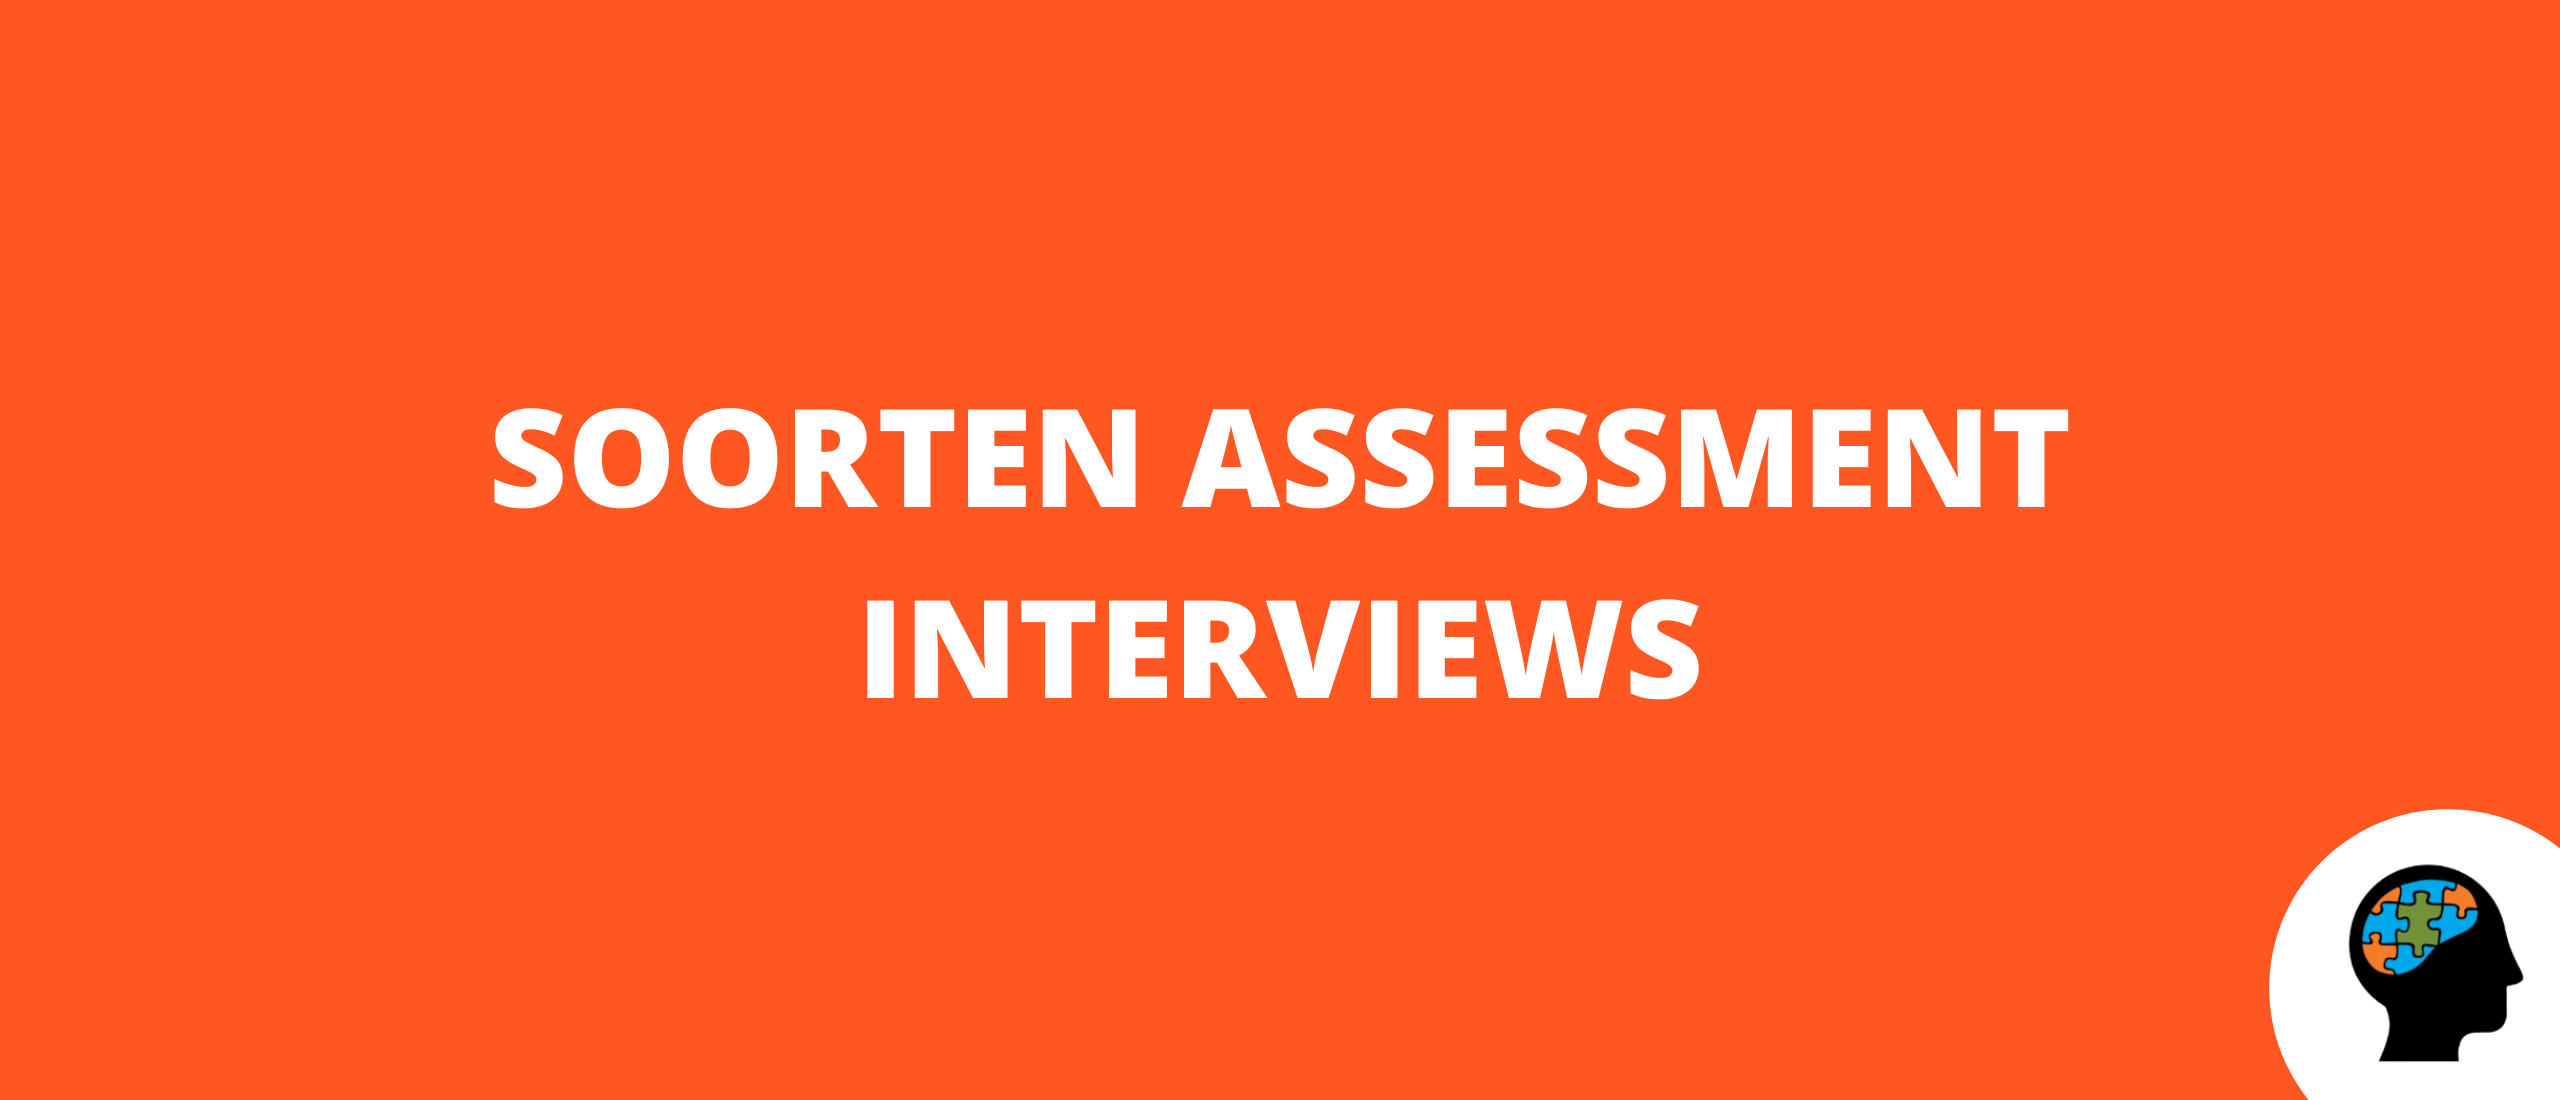 Soorten assessment interviews